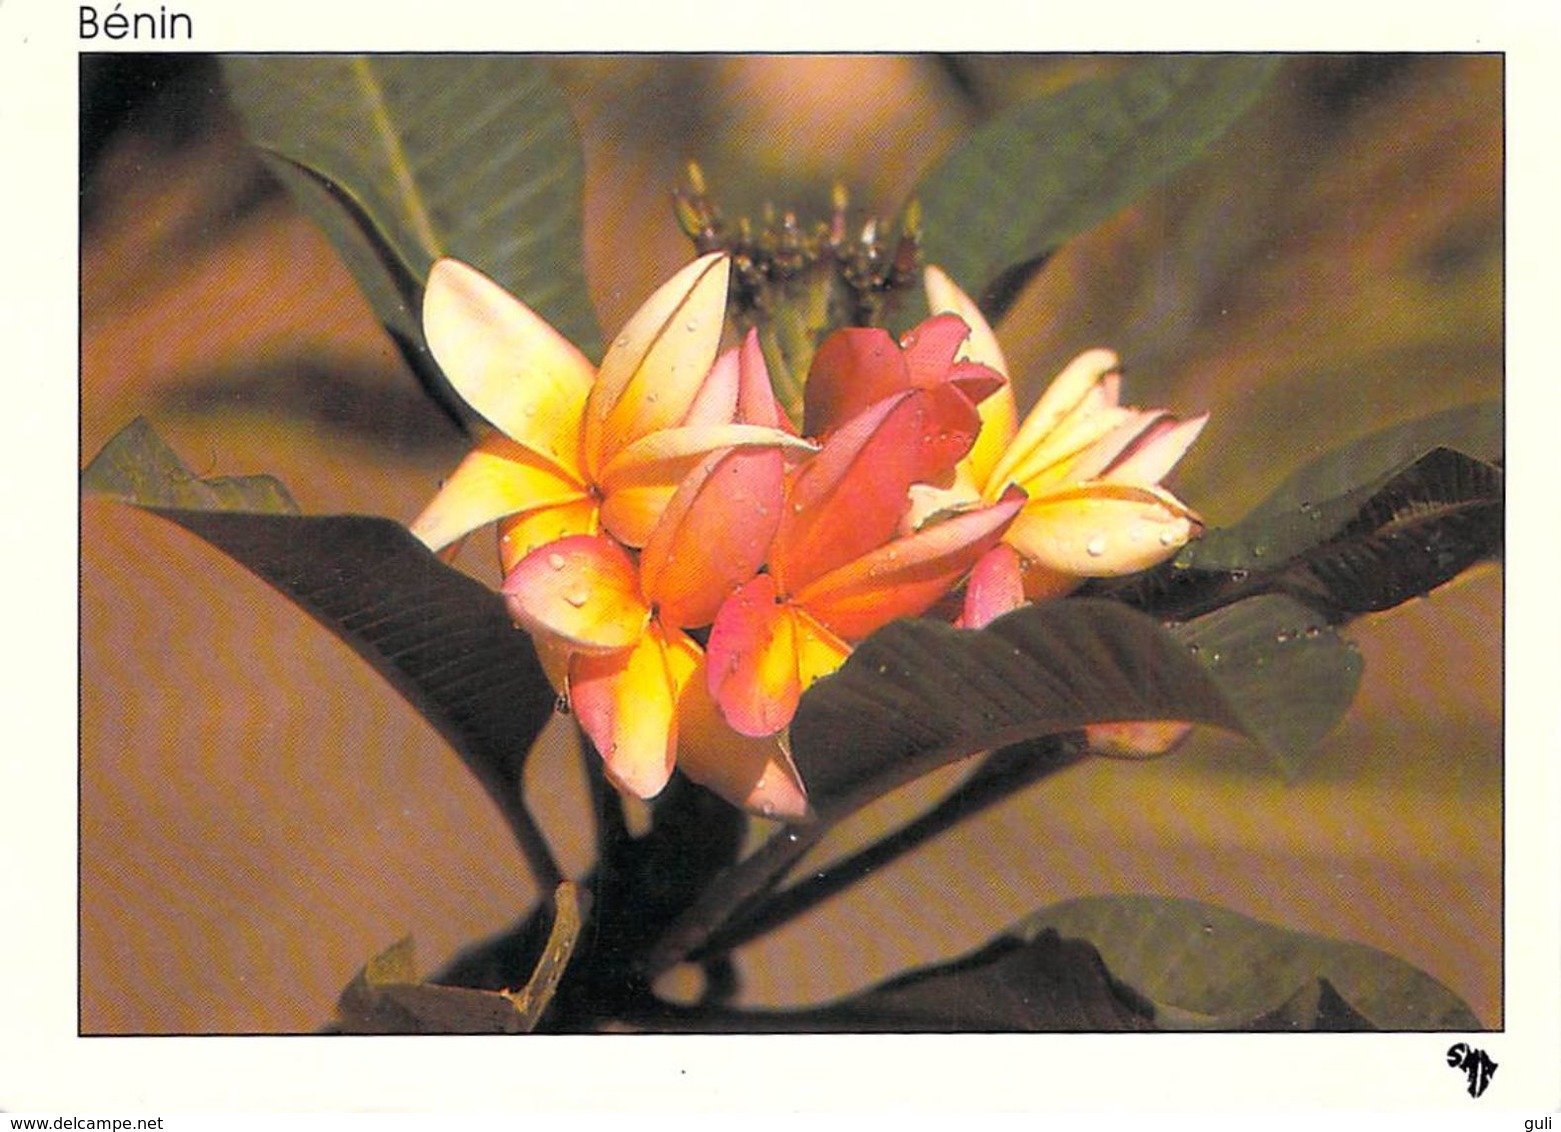 AFRIQUE Benin  Fleur De Frangipanier (flore) (MISSIONS AFRICAINES Photo Le Roux 195) *PRIX FIXE - Benin